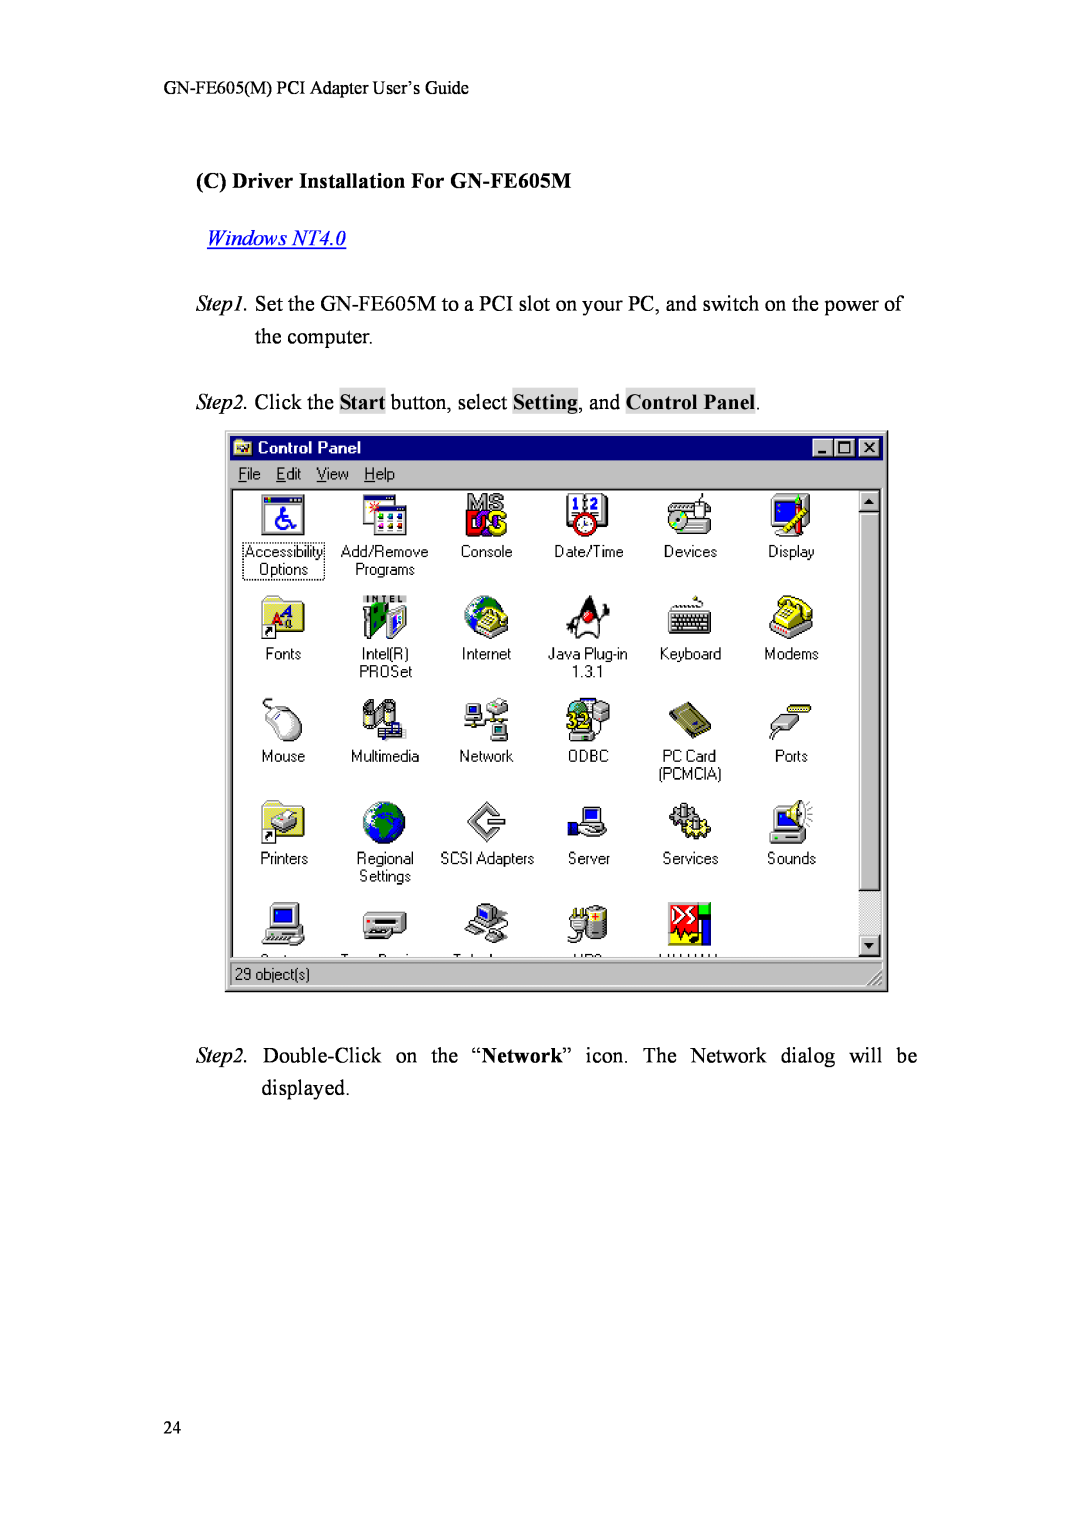 Gigabyte GN-FE605(M) manual C Driver Installation For GN-FE605M, Windows NT4.0 